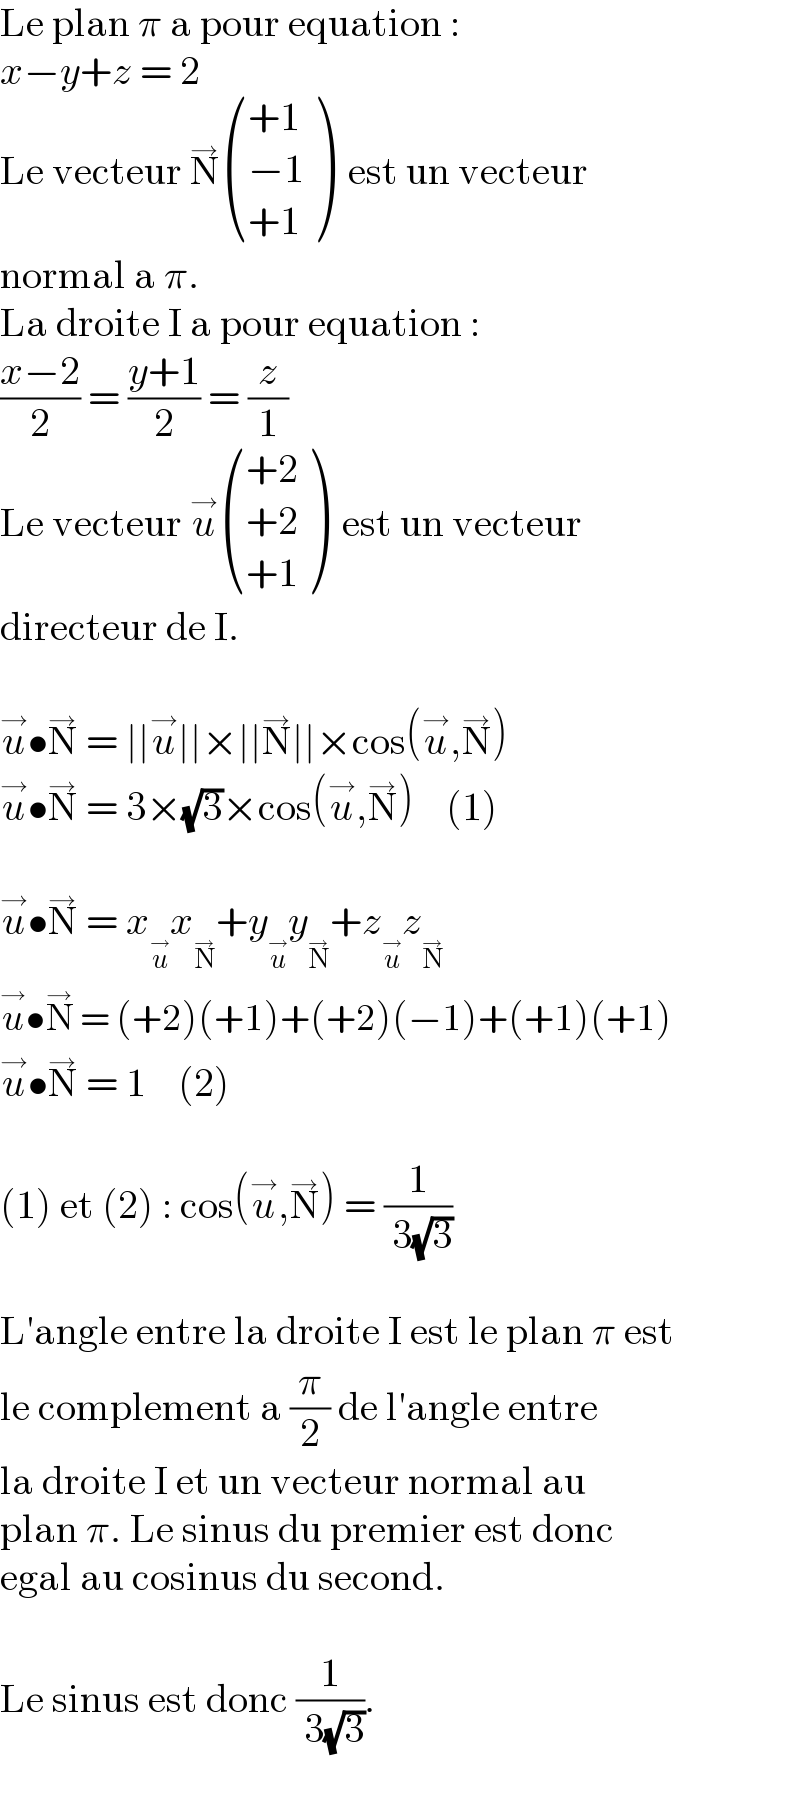 Le plan π a pour equation :  x−y+z = 2  Le vecteur N^→  (((+1)),((−1)),((+1)) )  est un vecteur  normal a π.  La droite I a pour equation :  ((x−2)/2) = ((y+1)/2) = (z/1)  Le vecteur u^→  (((+2)),((+2)),((+1)) )  est un vecteur  directeur de I.    u^→ •N^→  = ∣∣u^→ ∣∣×∣∣N^→ ∣∣×cos(u^→ ,N^→ )  u^→ •N^→  = 3×(√3)×cos(u^→ ,N^→ )    (1)    u^→ •N^→  = x_u^→  x_N^→  +y_u^→  y_N^→  +z_u^→  z_N^→    u^→ •N^→  = (+2)(+1)+(+2)(−1)+(+1)(+1)  u^→ •N^→  = 1    (2)    (1) et (2) : cos(u^→ ,N^→ ) = (1/( 3(√3)))    L′angle entre la droite I est le plan π est  le complement a (π/2) de l′angle entre  la droite I et un vecteur normal au  plan π. Le sinus du premier est donc  egal au cosinus du second.    Le sinus est donc (1/( 3(√3))).  